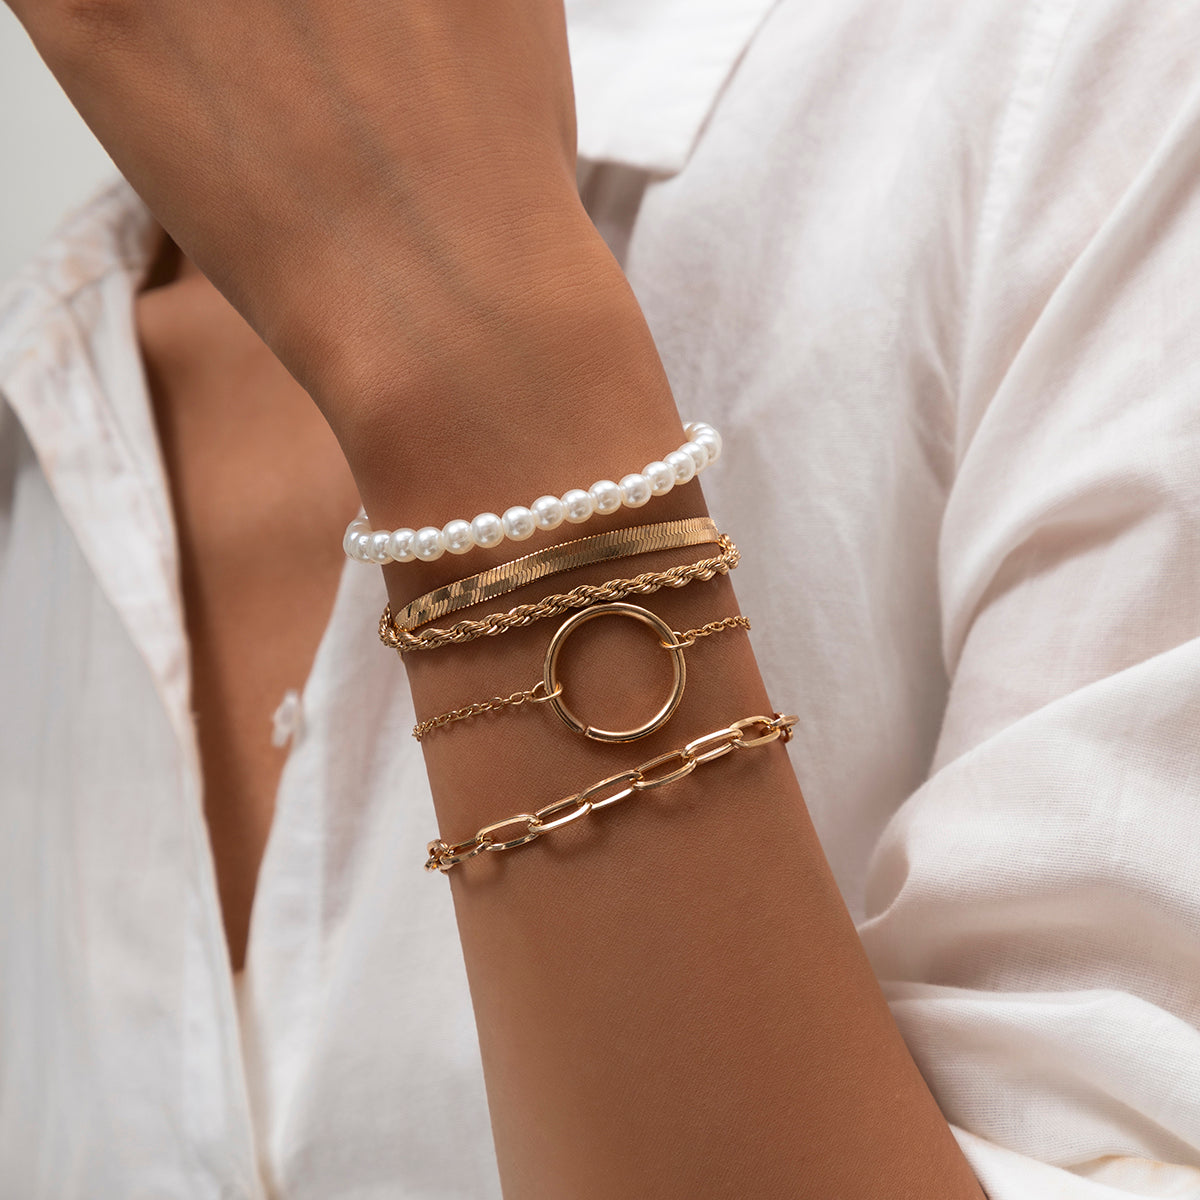 Damen Trendy Armband Set 5-Fach gold mit Perlen Schmuck einzel tragbar in minimalistischem Style